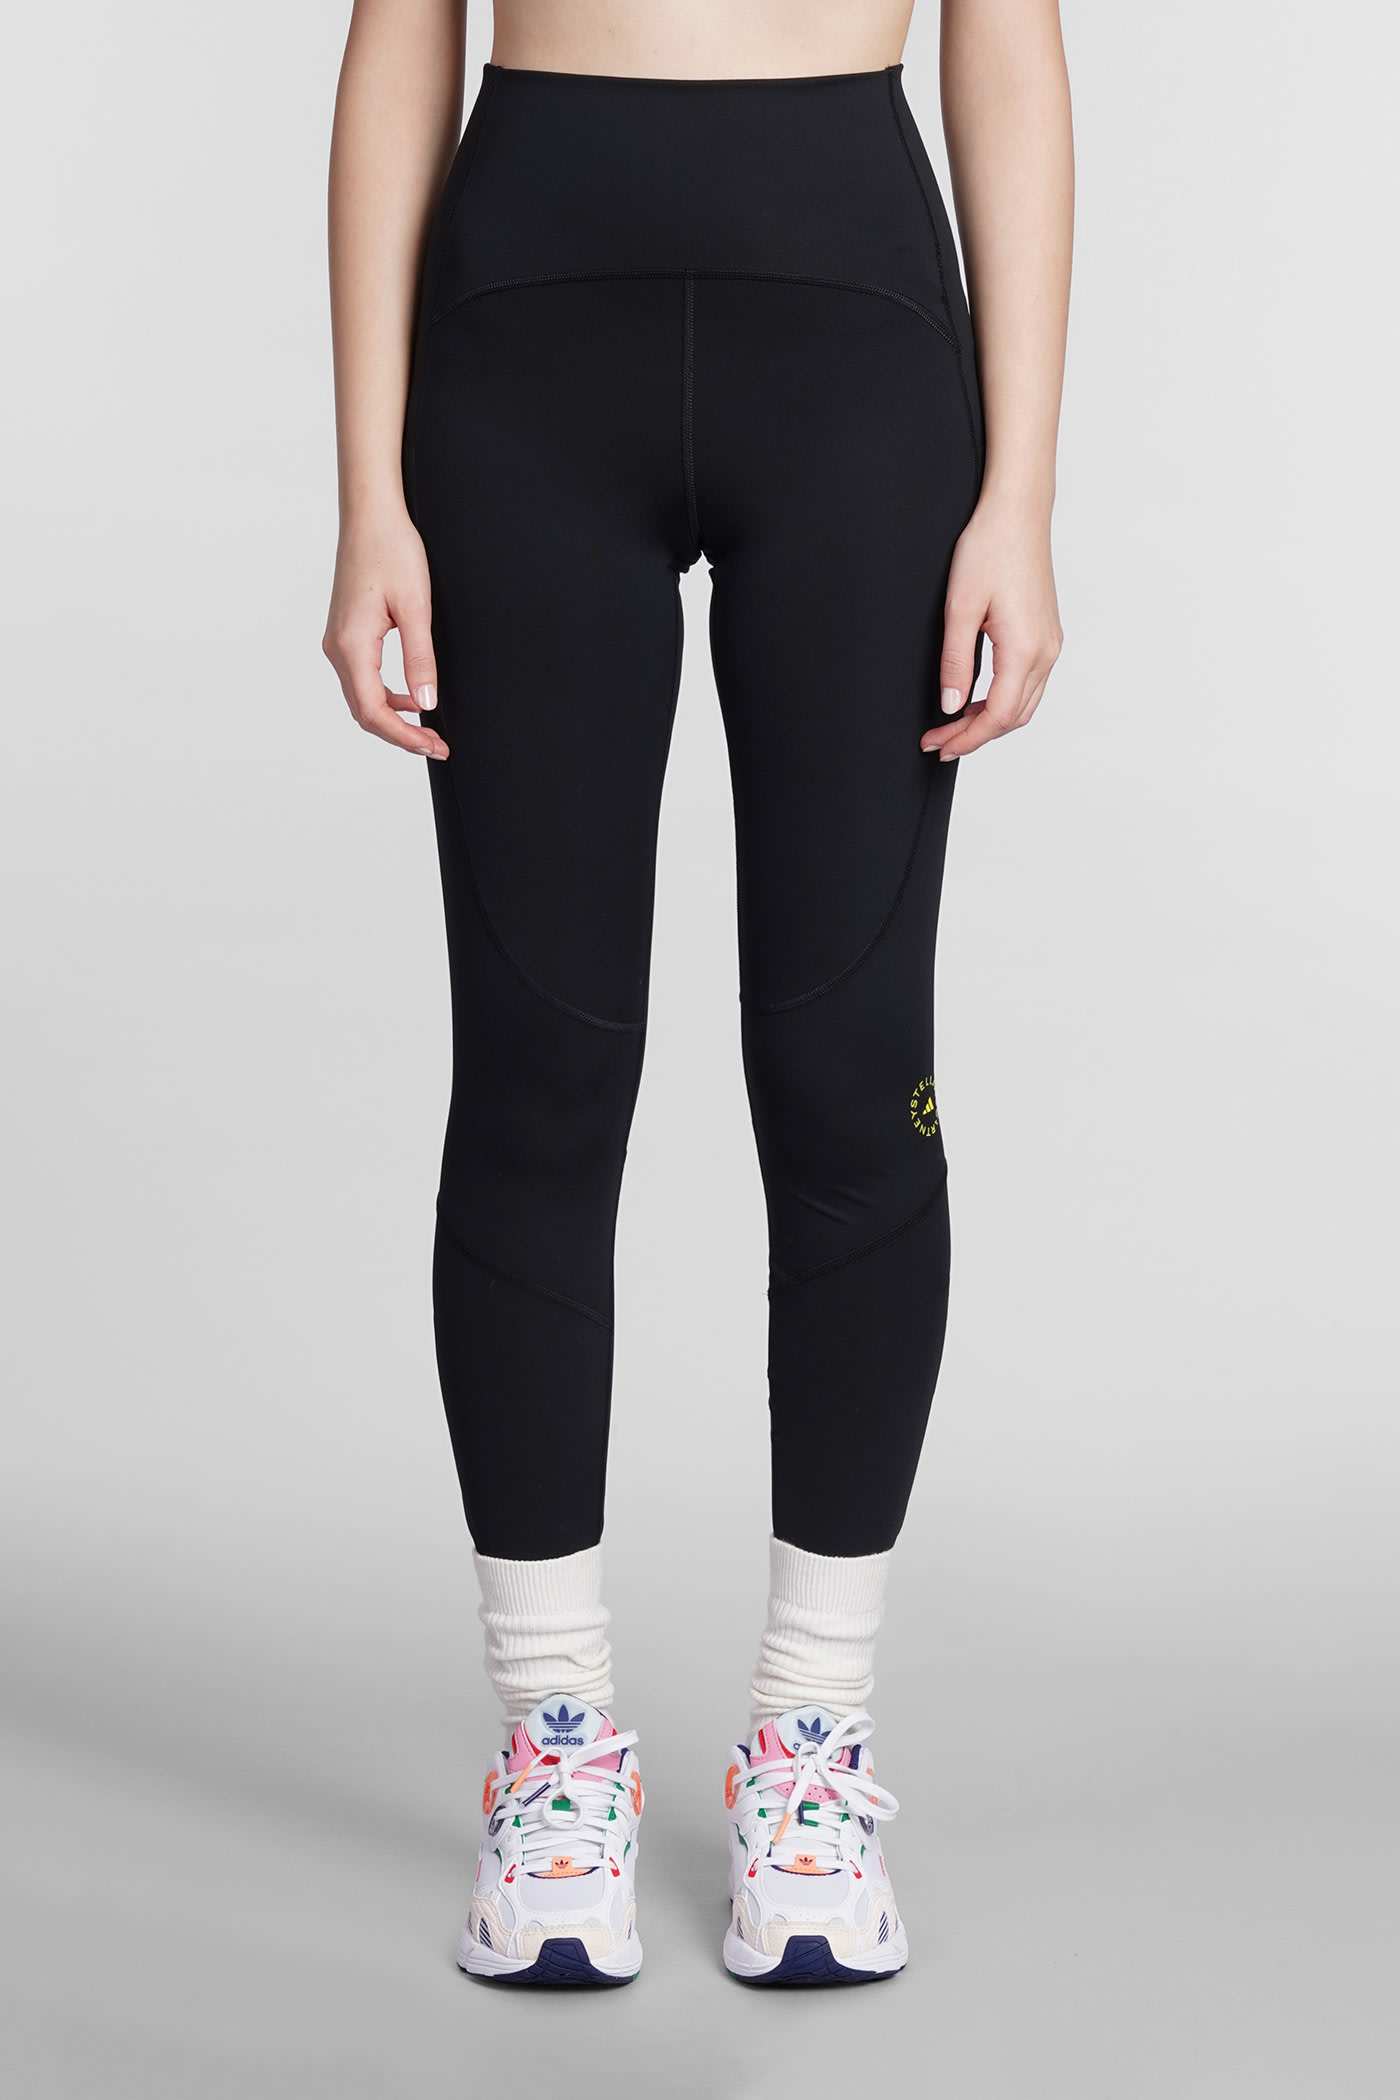 Adidas by Stella McCartney Leggins In Black Polyester